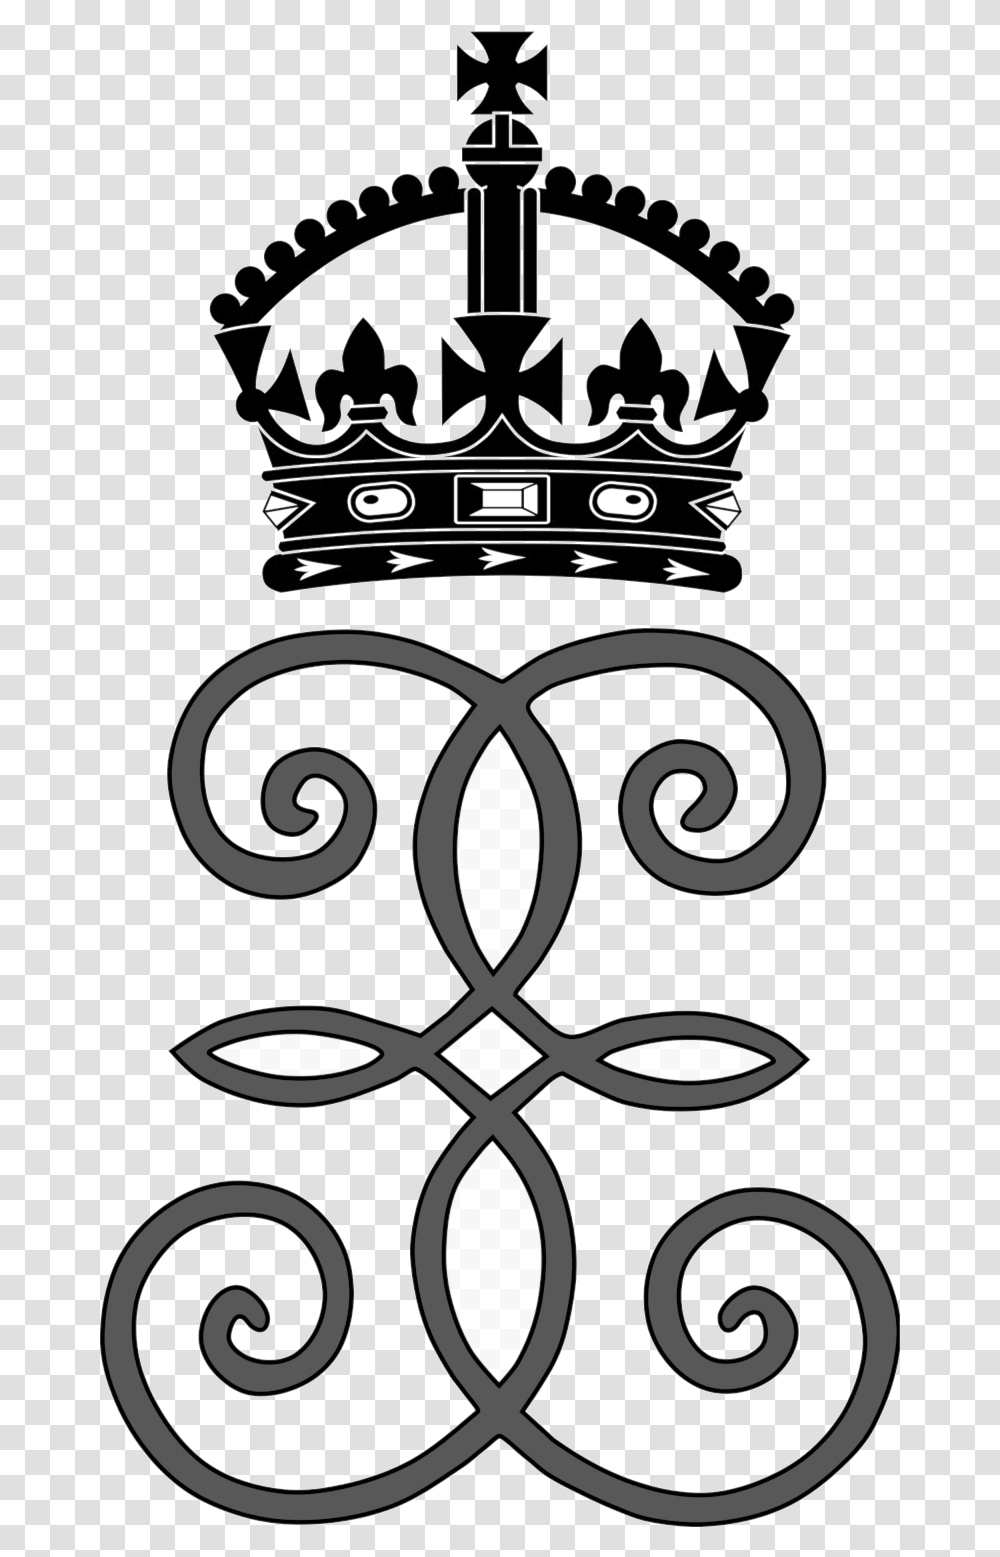 Queen Crown Royal Vector Clipart Queen Elizabeth Royal Monogram, Stencil, Label, Architecture Transparent Png